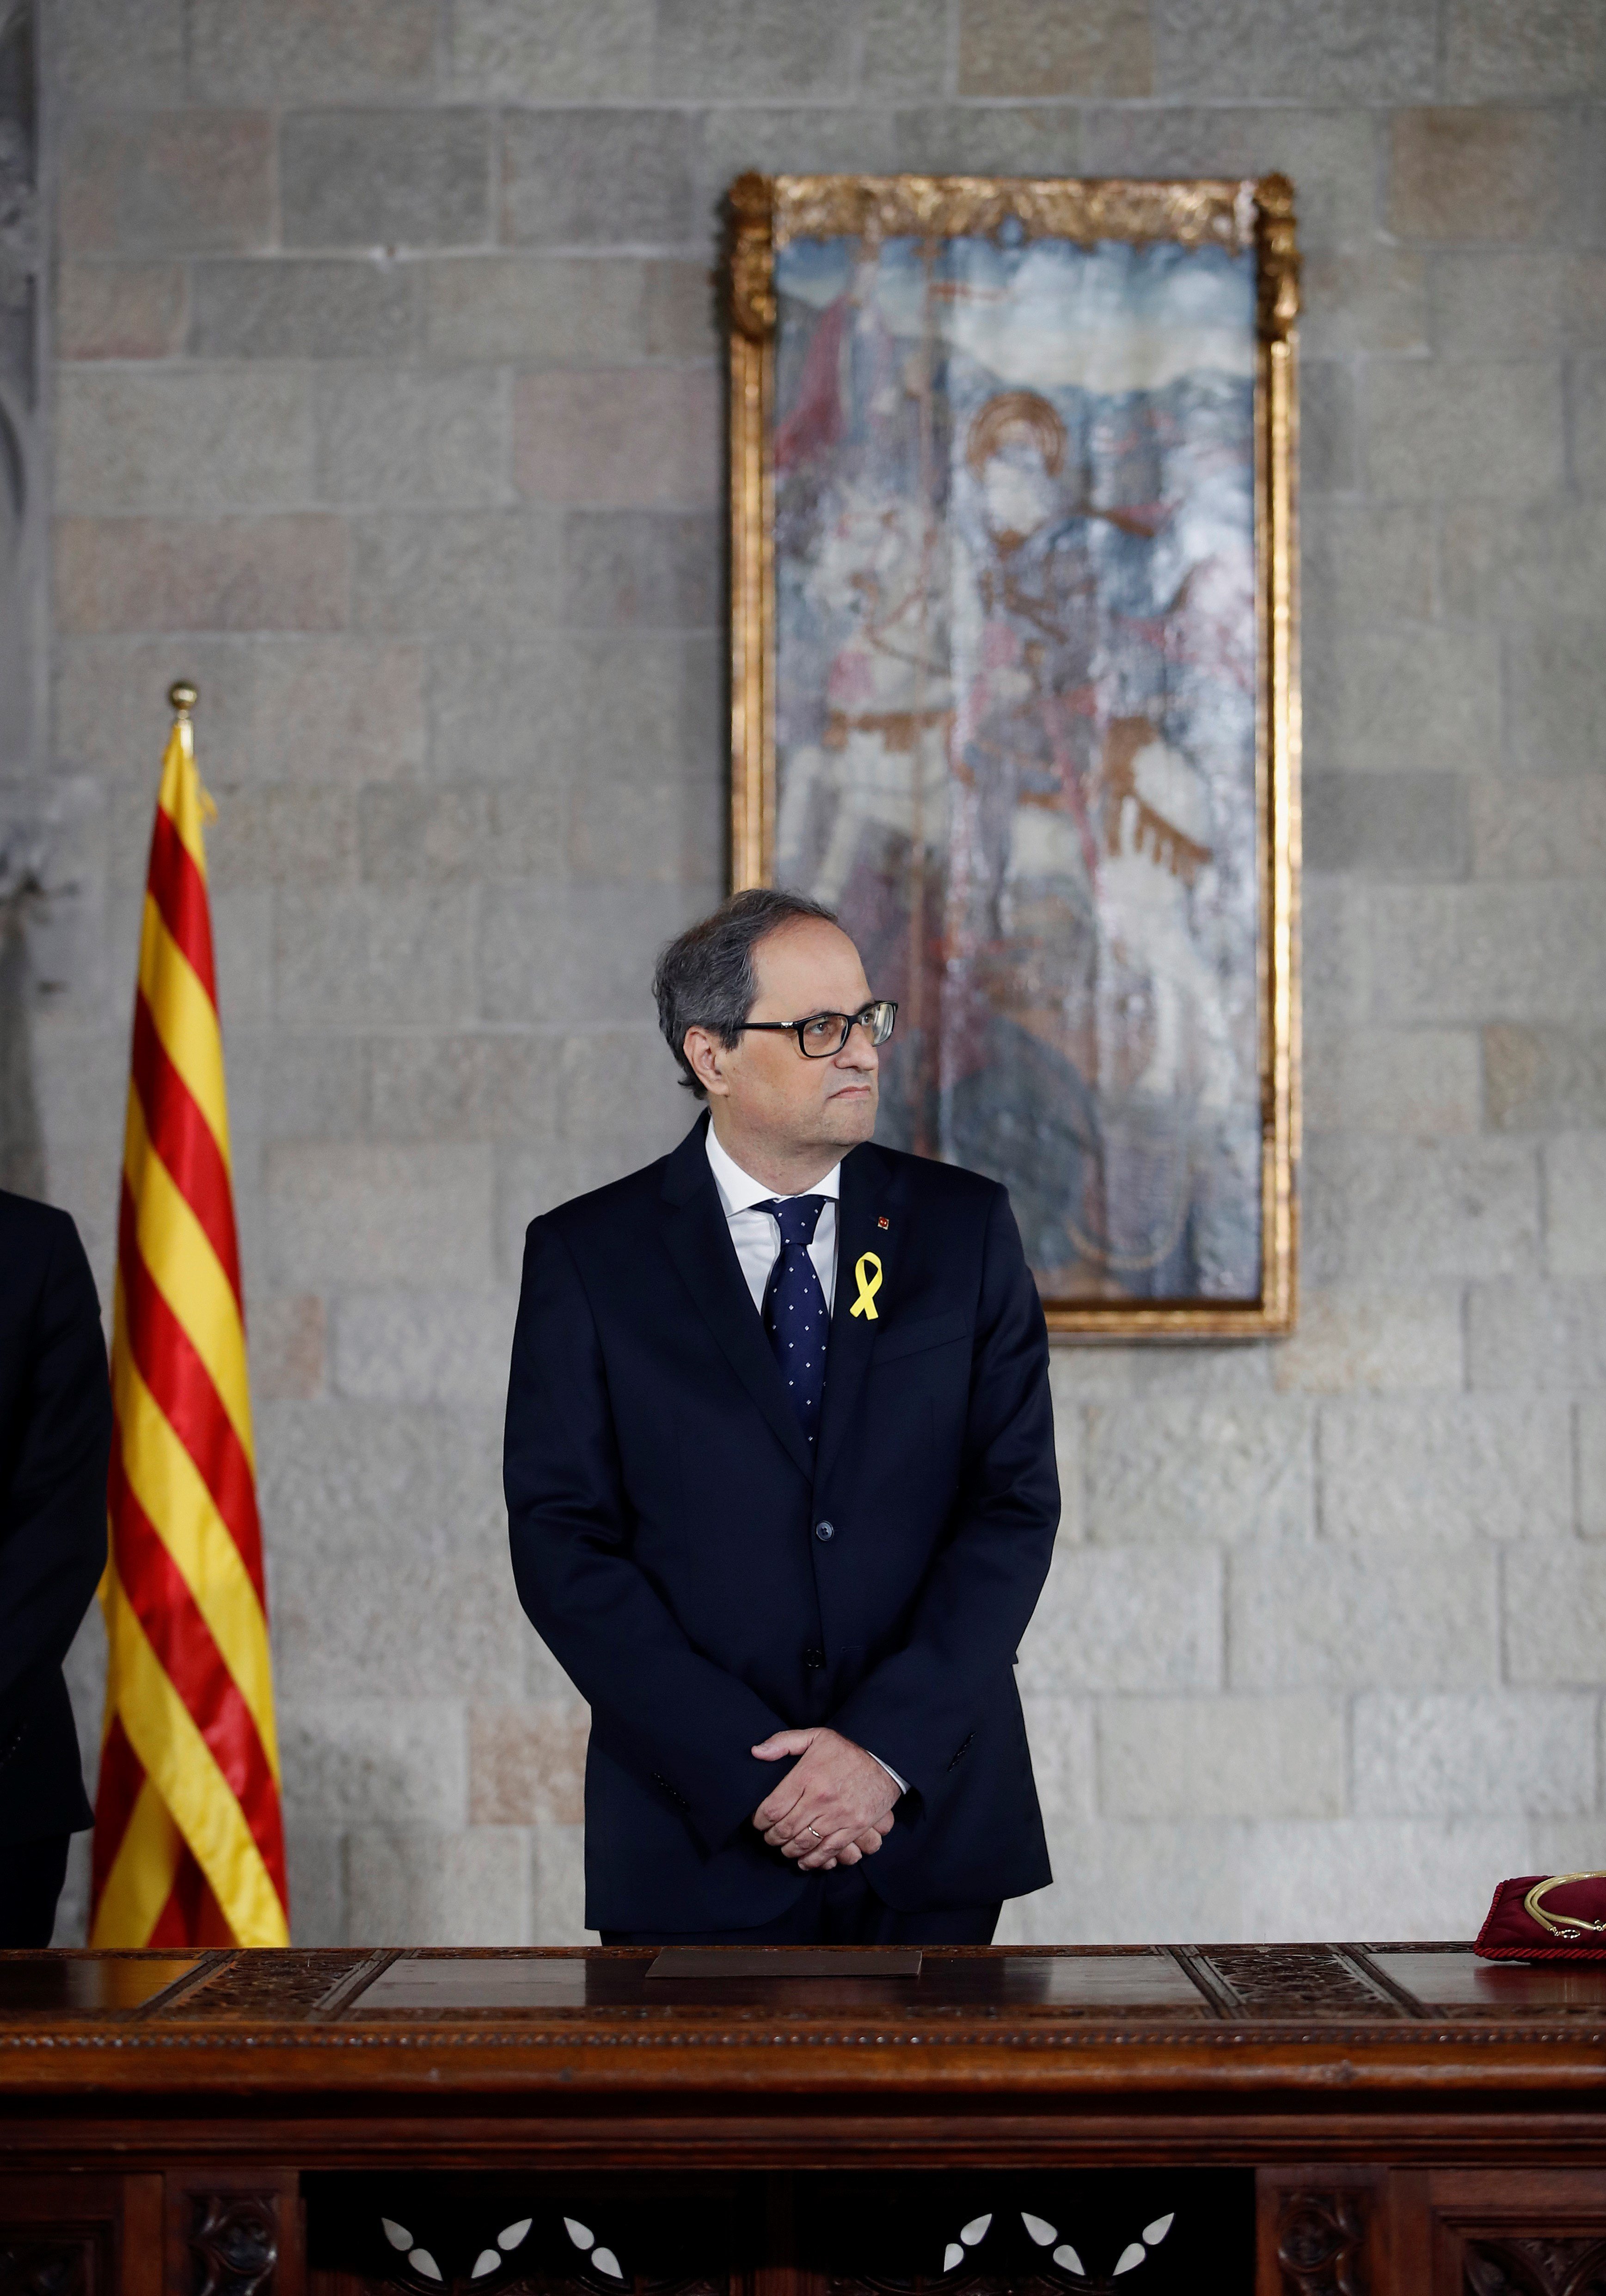 La carta en que Torra pide a Rajoy una reunión para dialogar "sin condiciones"